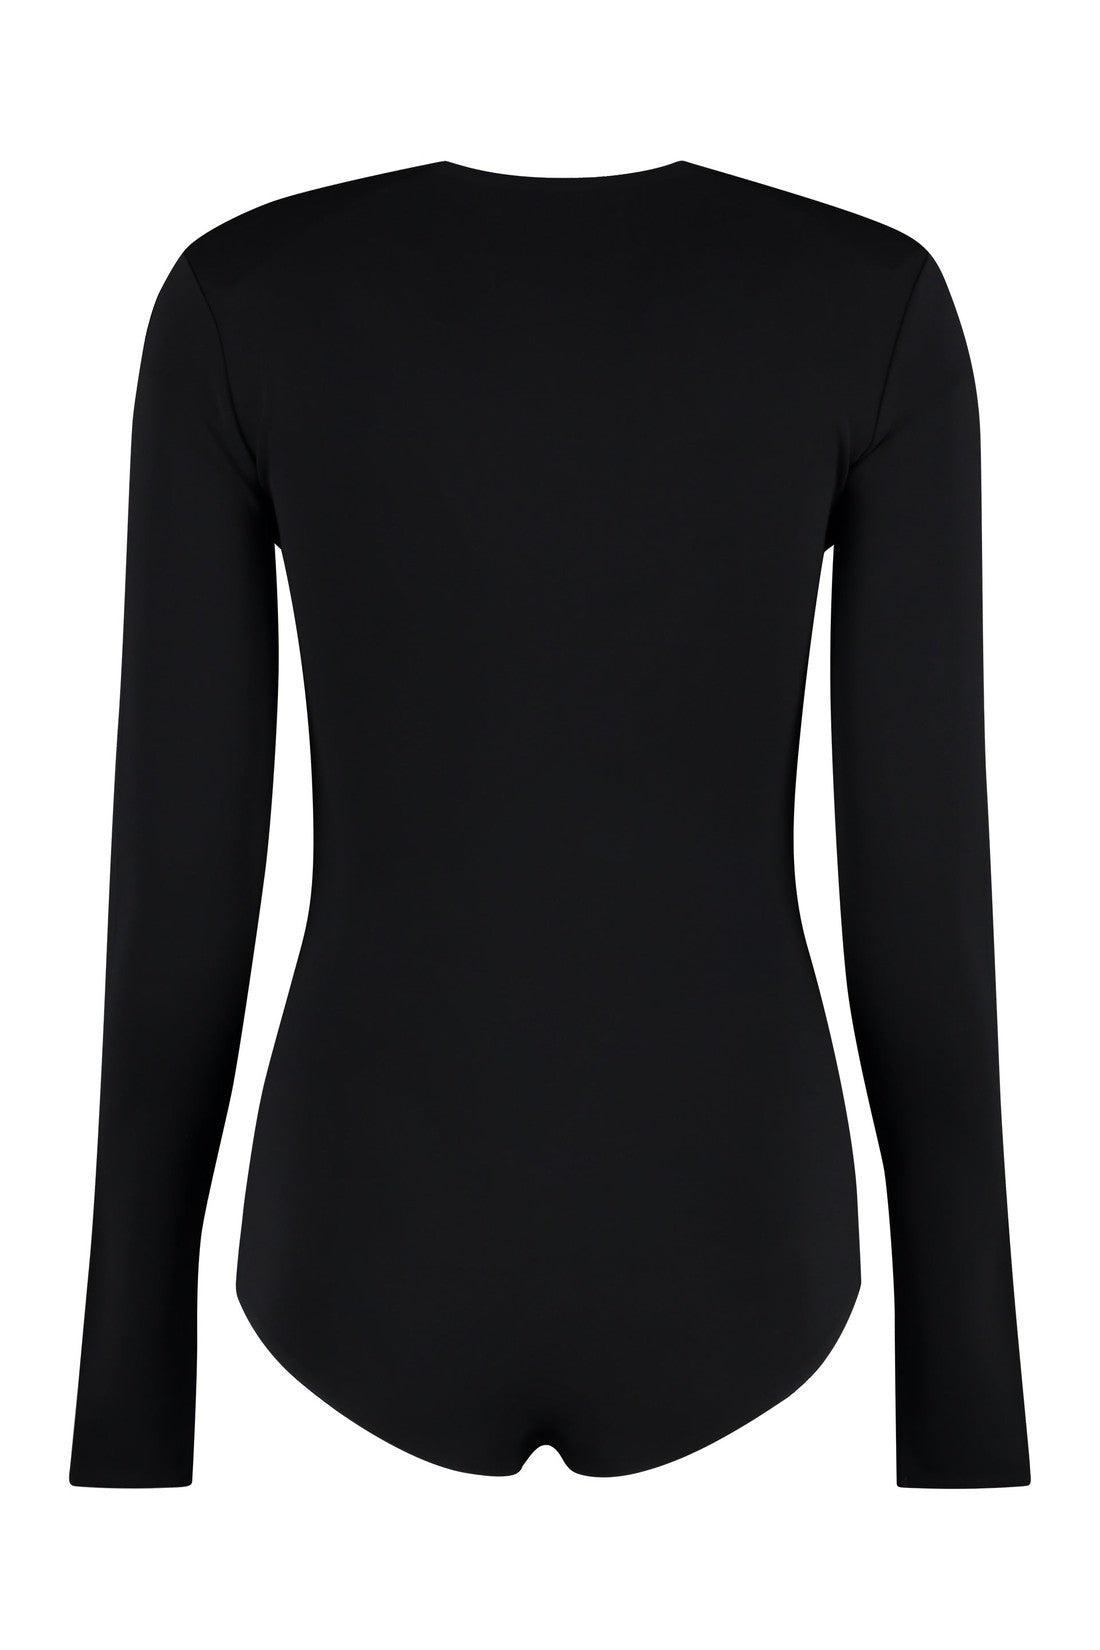 Maison Margiela-OUTLET-SALE-Long sleeve jersey bodysuit-ARCHIVIST